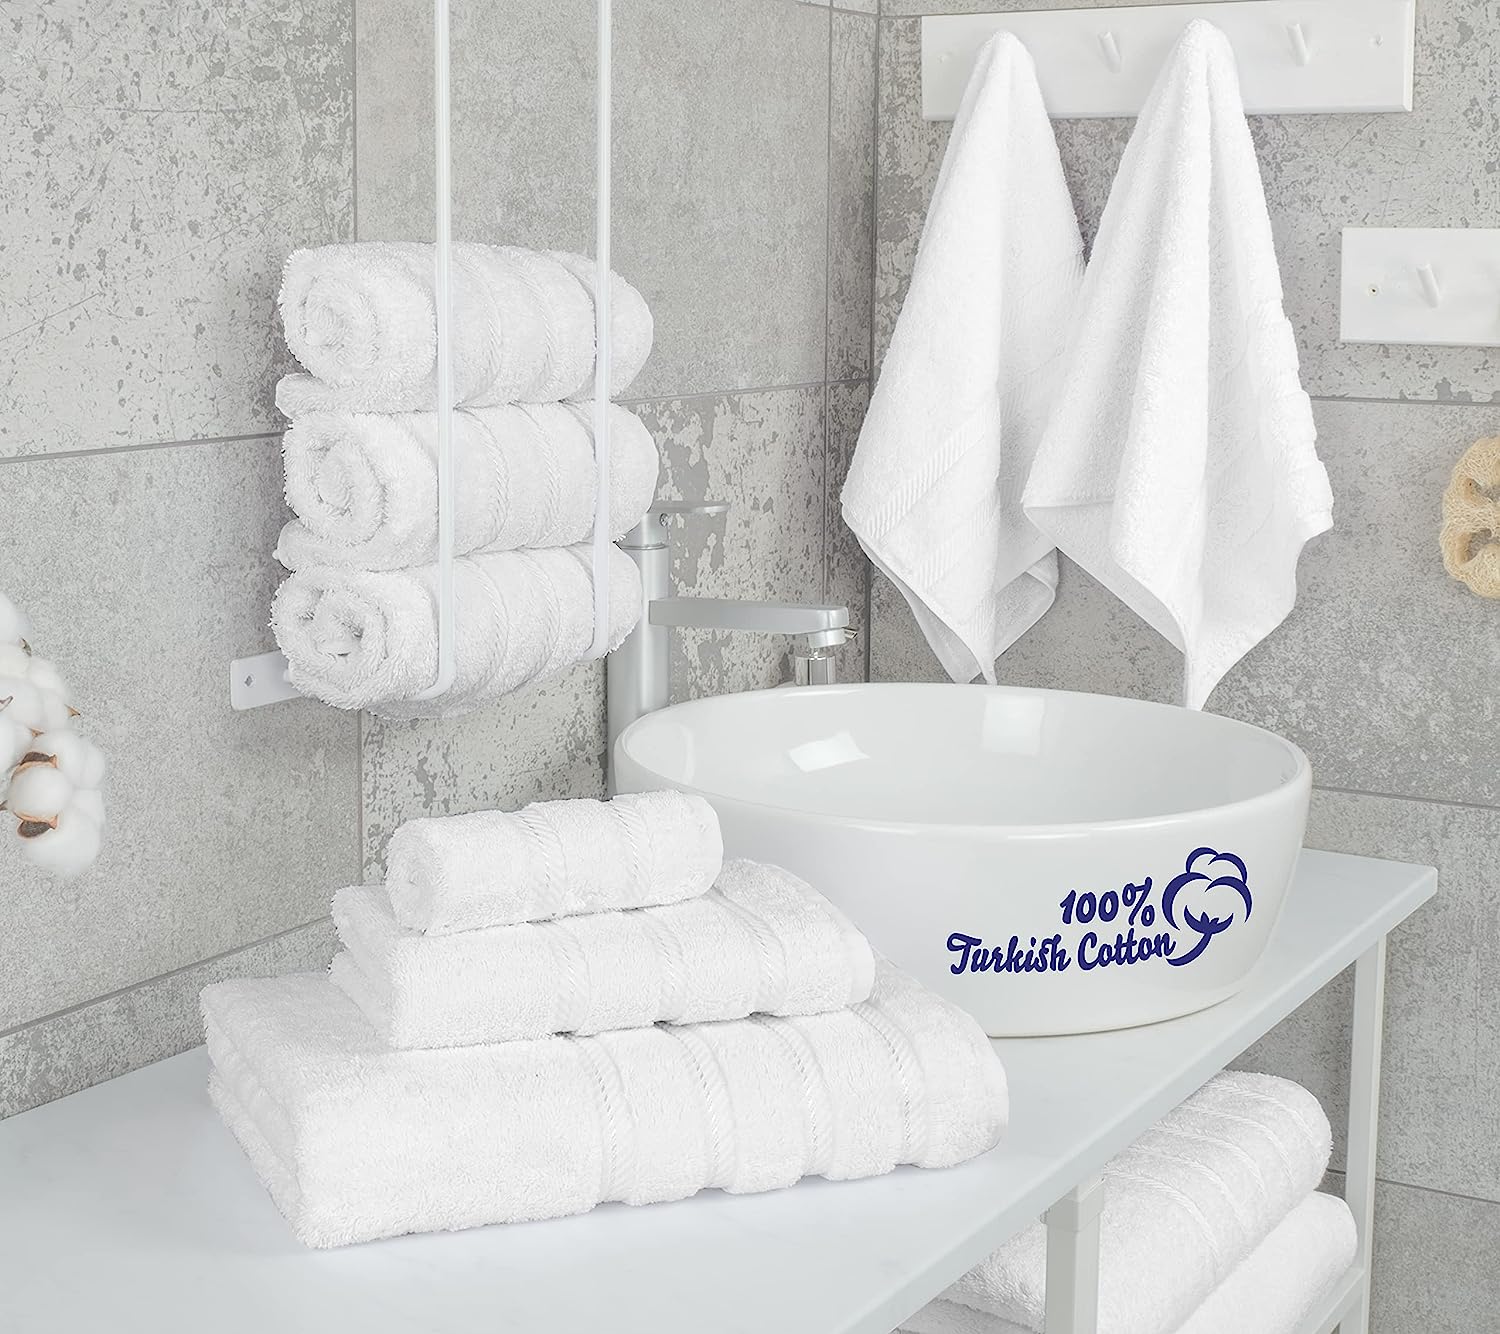  Juego de toallas blancas para baño, juego de regalo de lujo de  6 piezas, 2 toallas de baño grandes de 30 x 56 pulgadas, 2 toallas de mano  de 18 x